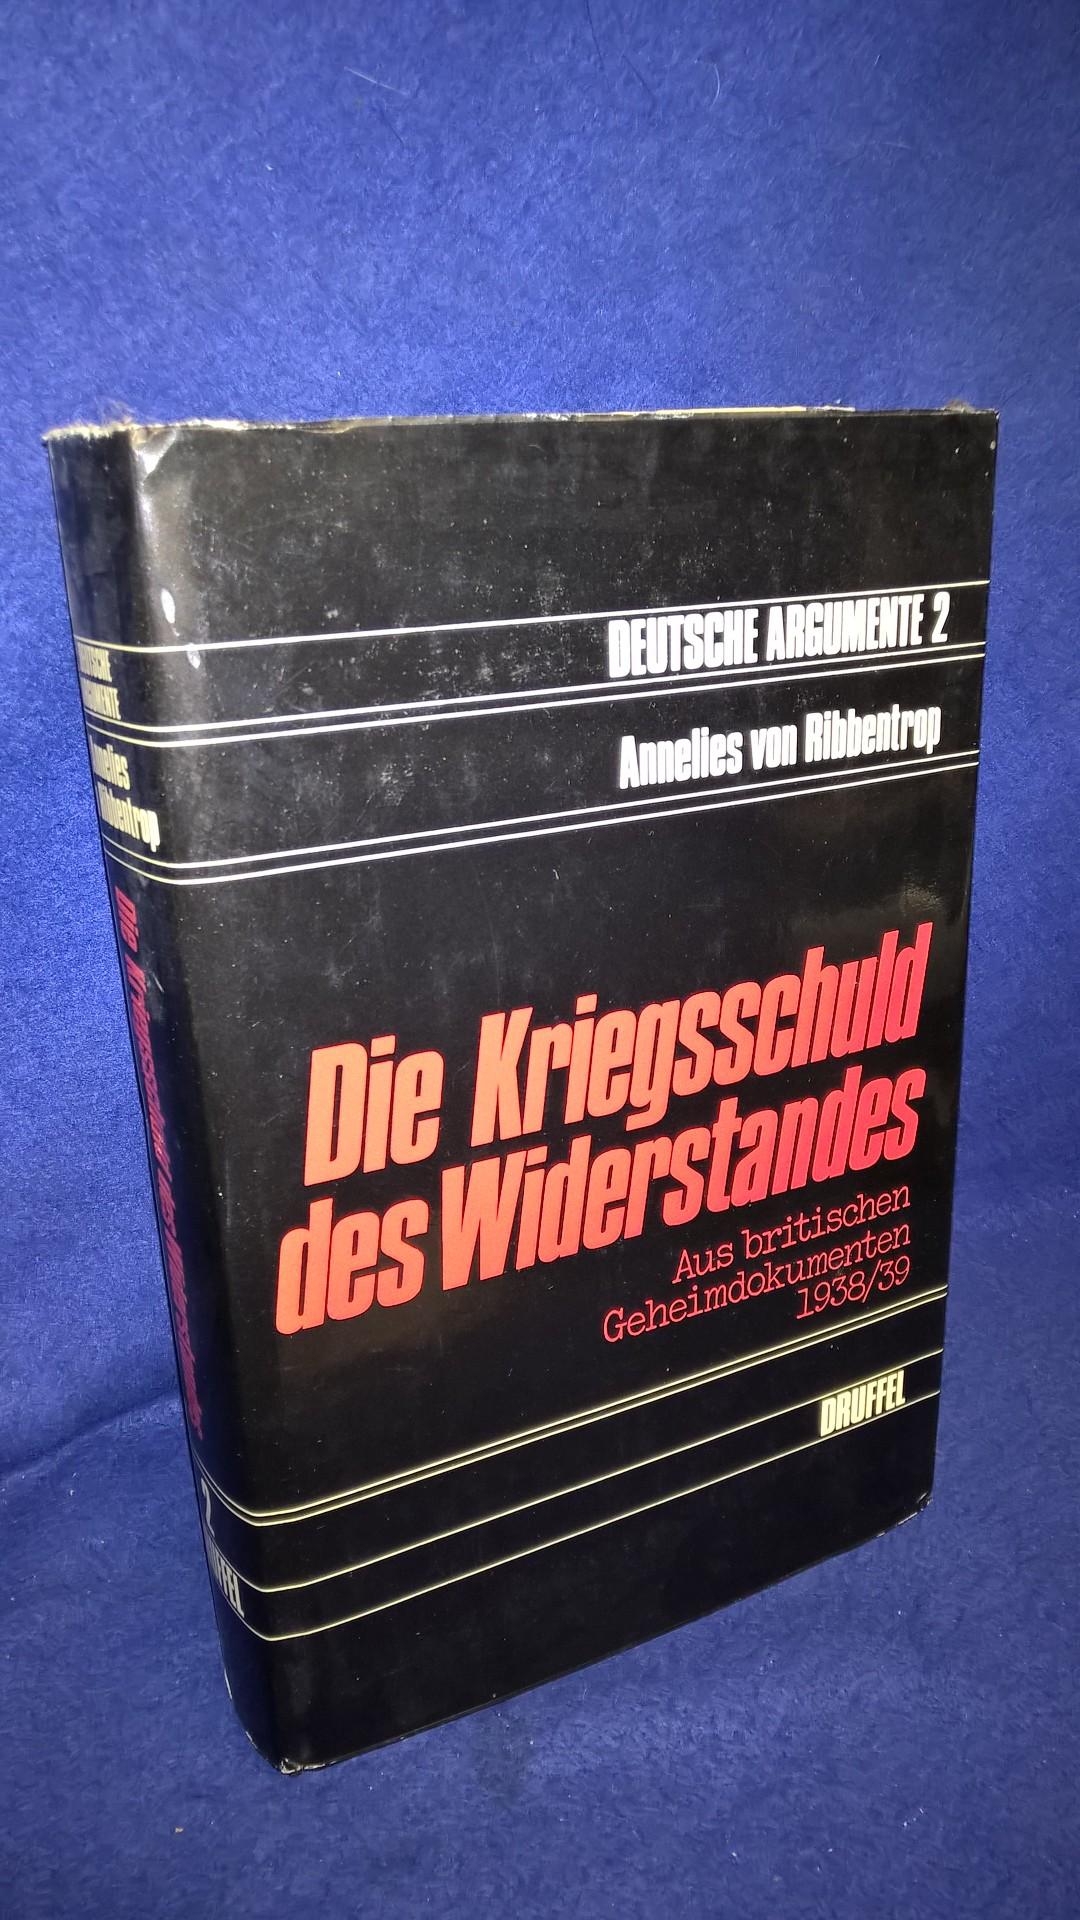 Die Kriegsschuld des Widerstandes. Aus britischen Geheimdokumenten 1938/1939.